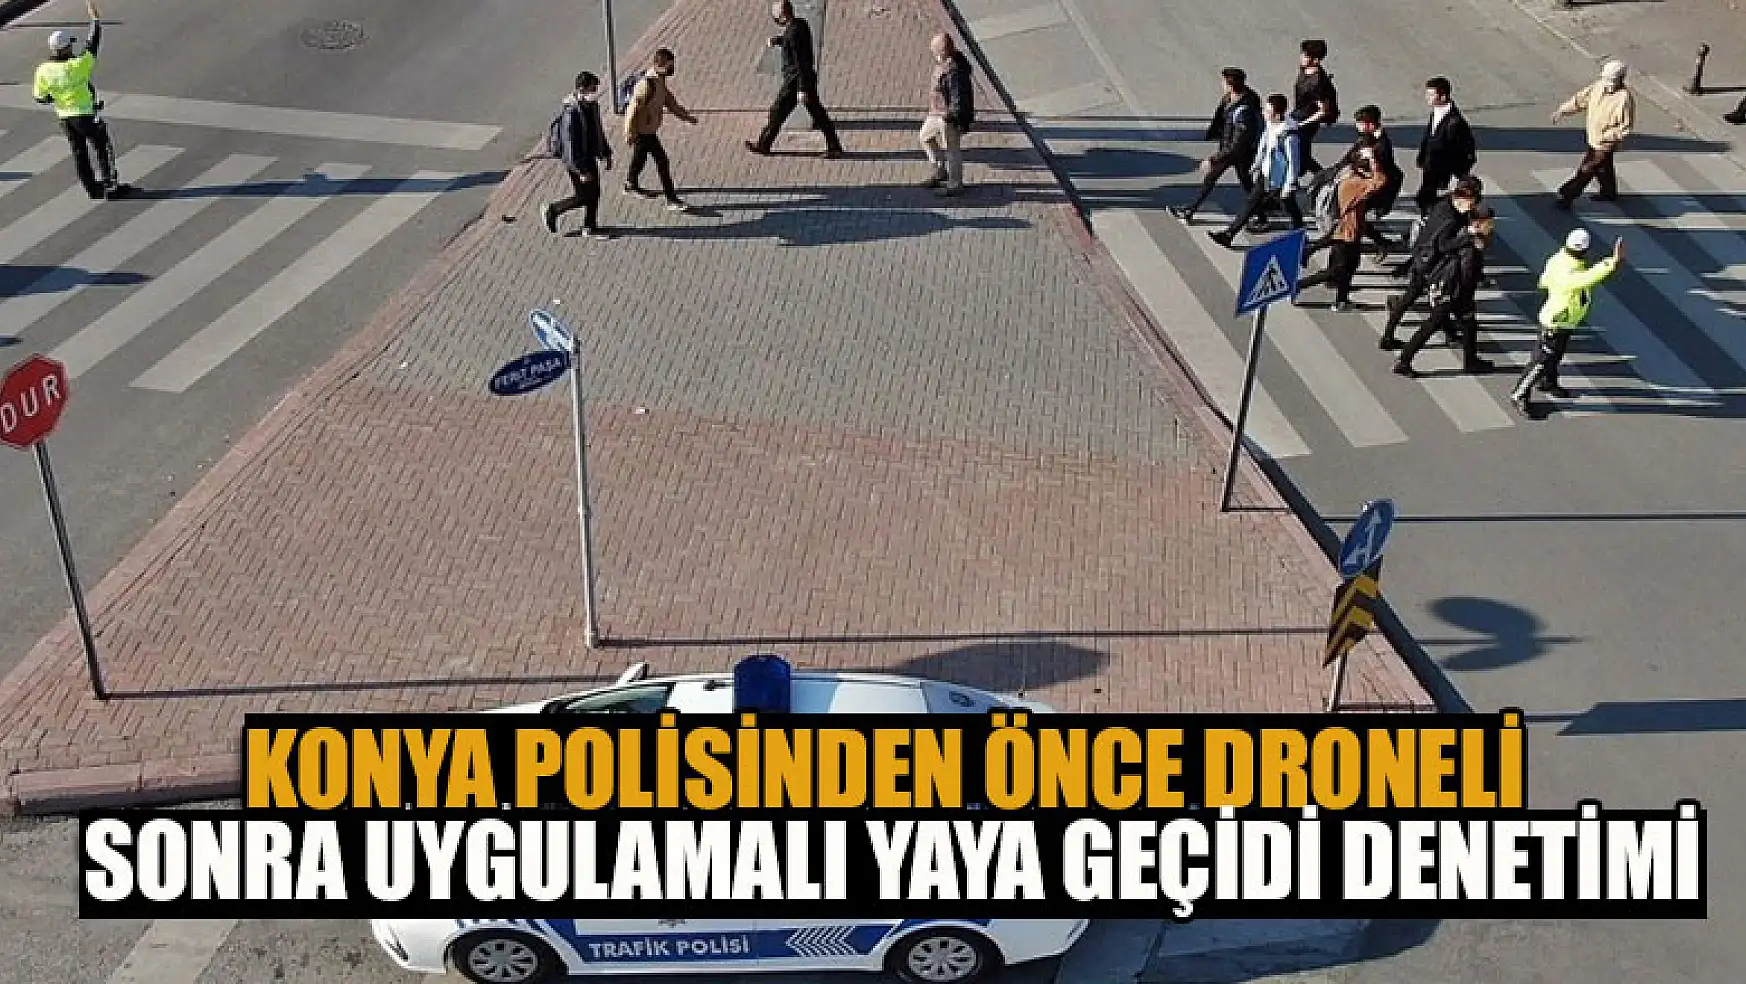 Konya polisinden önce droneli sonra uygulamalı yaya geçidi denetimi